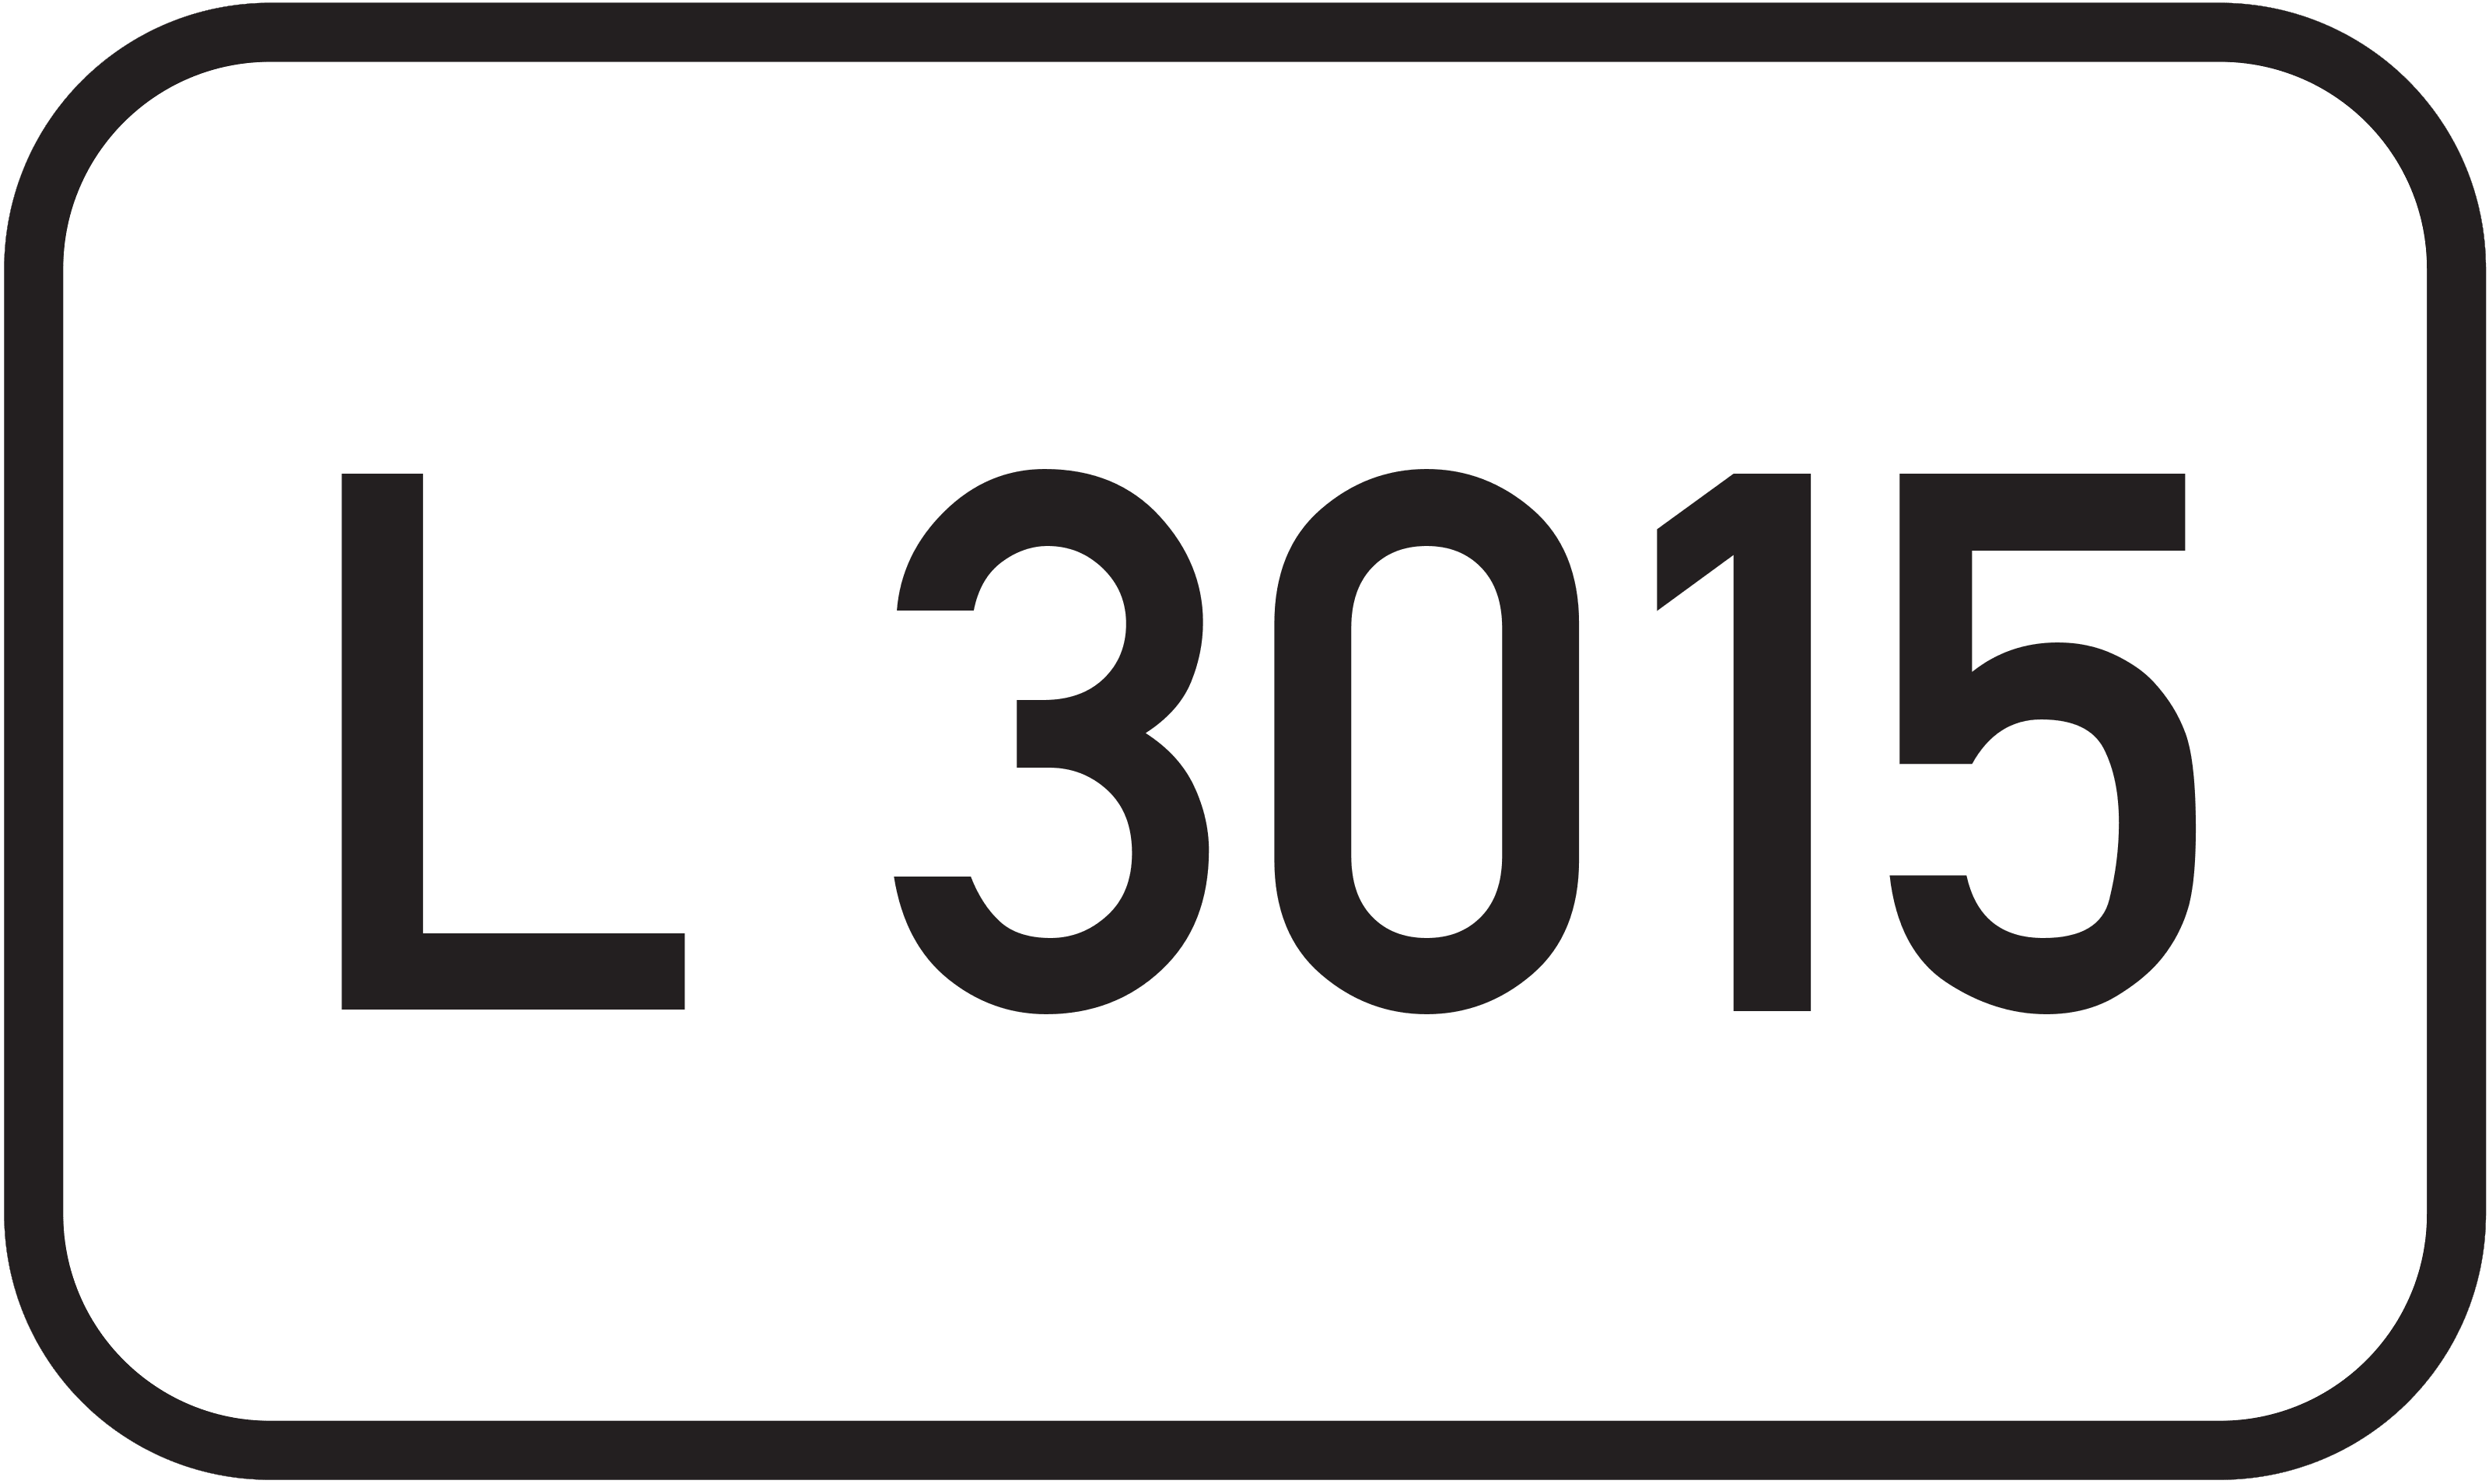 Landesstraße L 3015